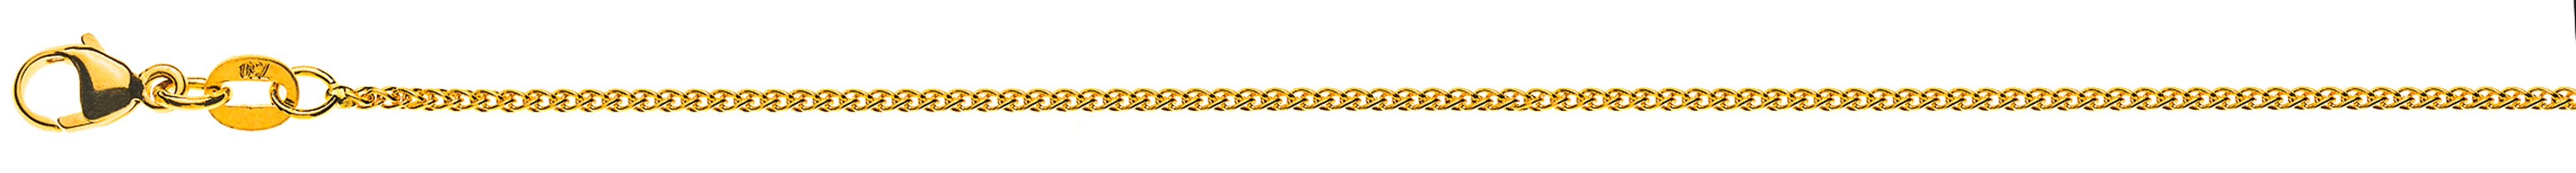 AURONOS Élégance Necklace yellow gold 14K cable chain 38cm 1.2mm